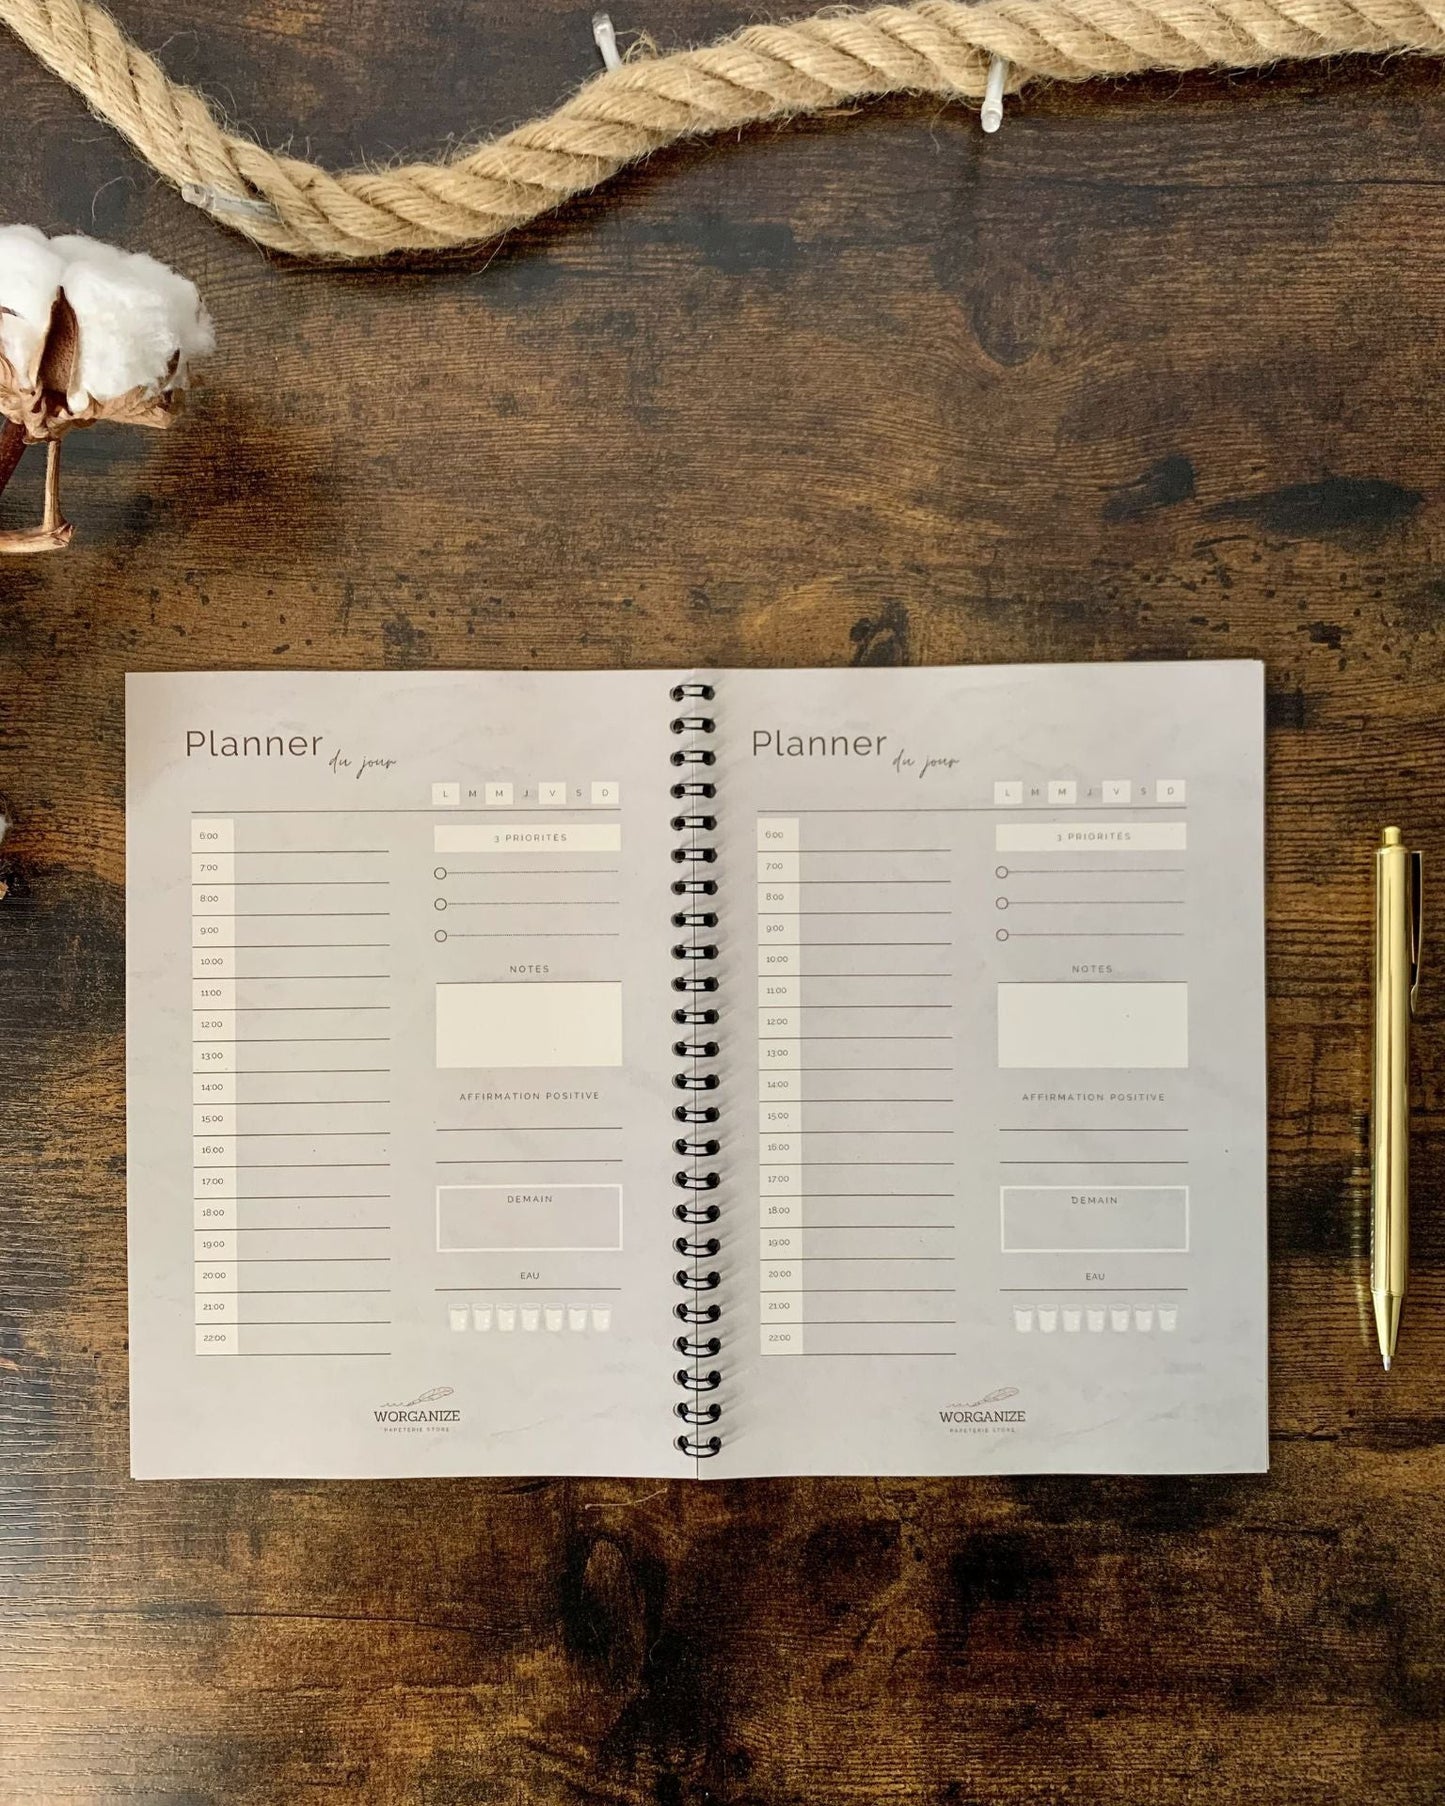 Planner du jour de Worganize, la papeterie minimaliste d'organisation